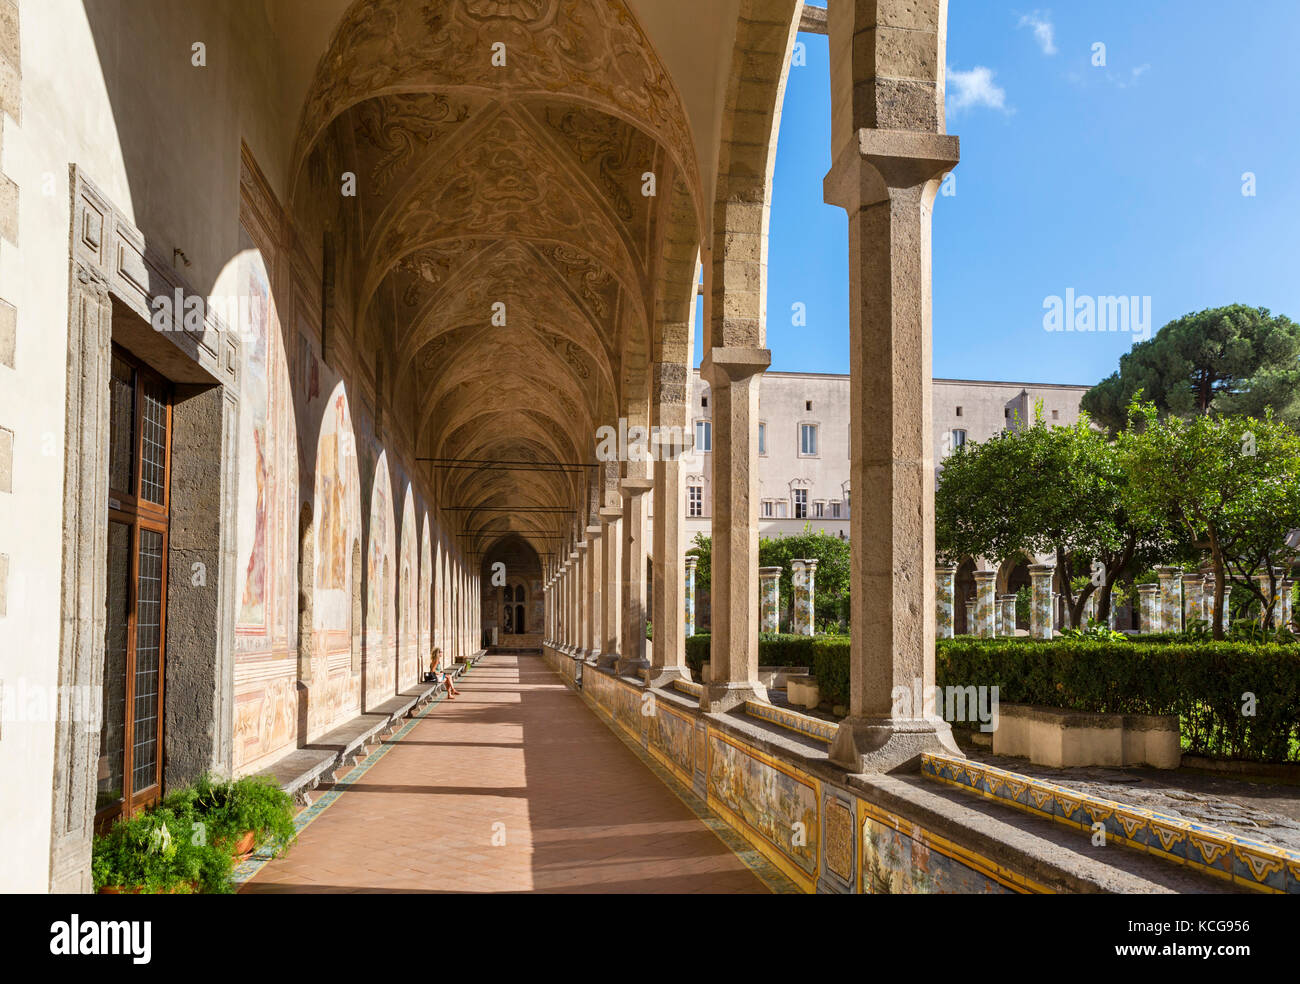 Das Kloster von Santa Chiara (Chiostro di Santa Chiara), Kloster Santa Chiara, Neapel, Italien Stockfoto